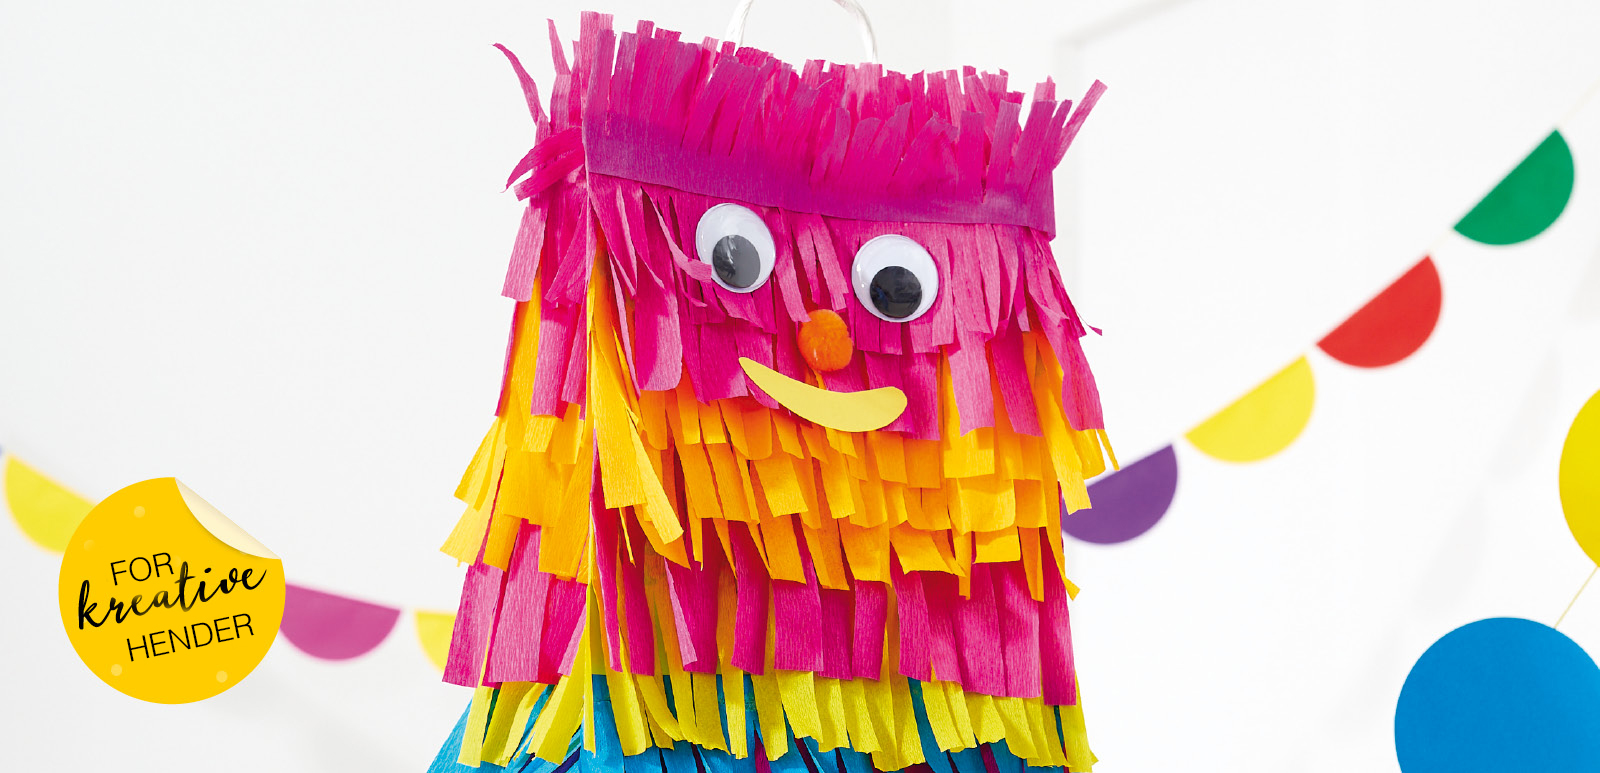 Formingsaktiviteter: Piñata